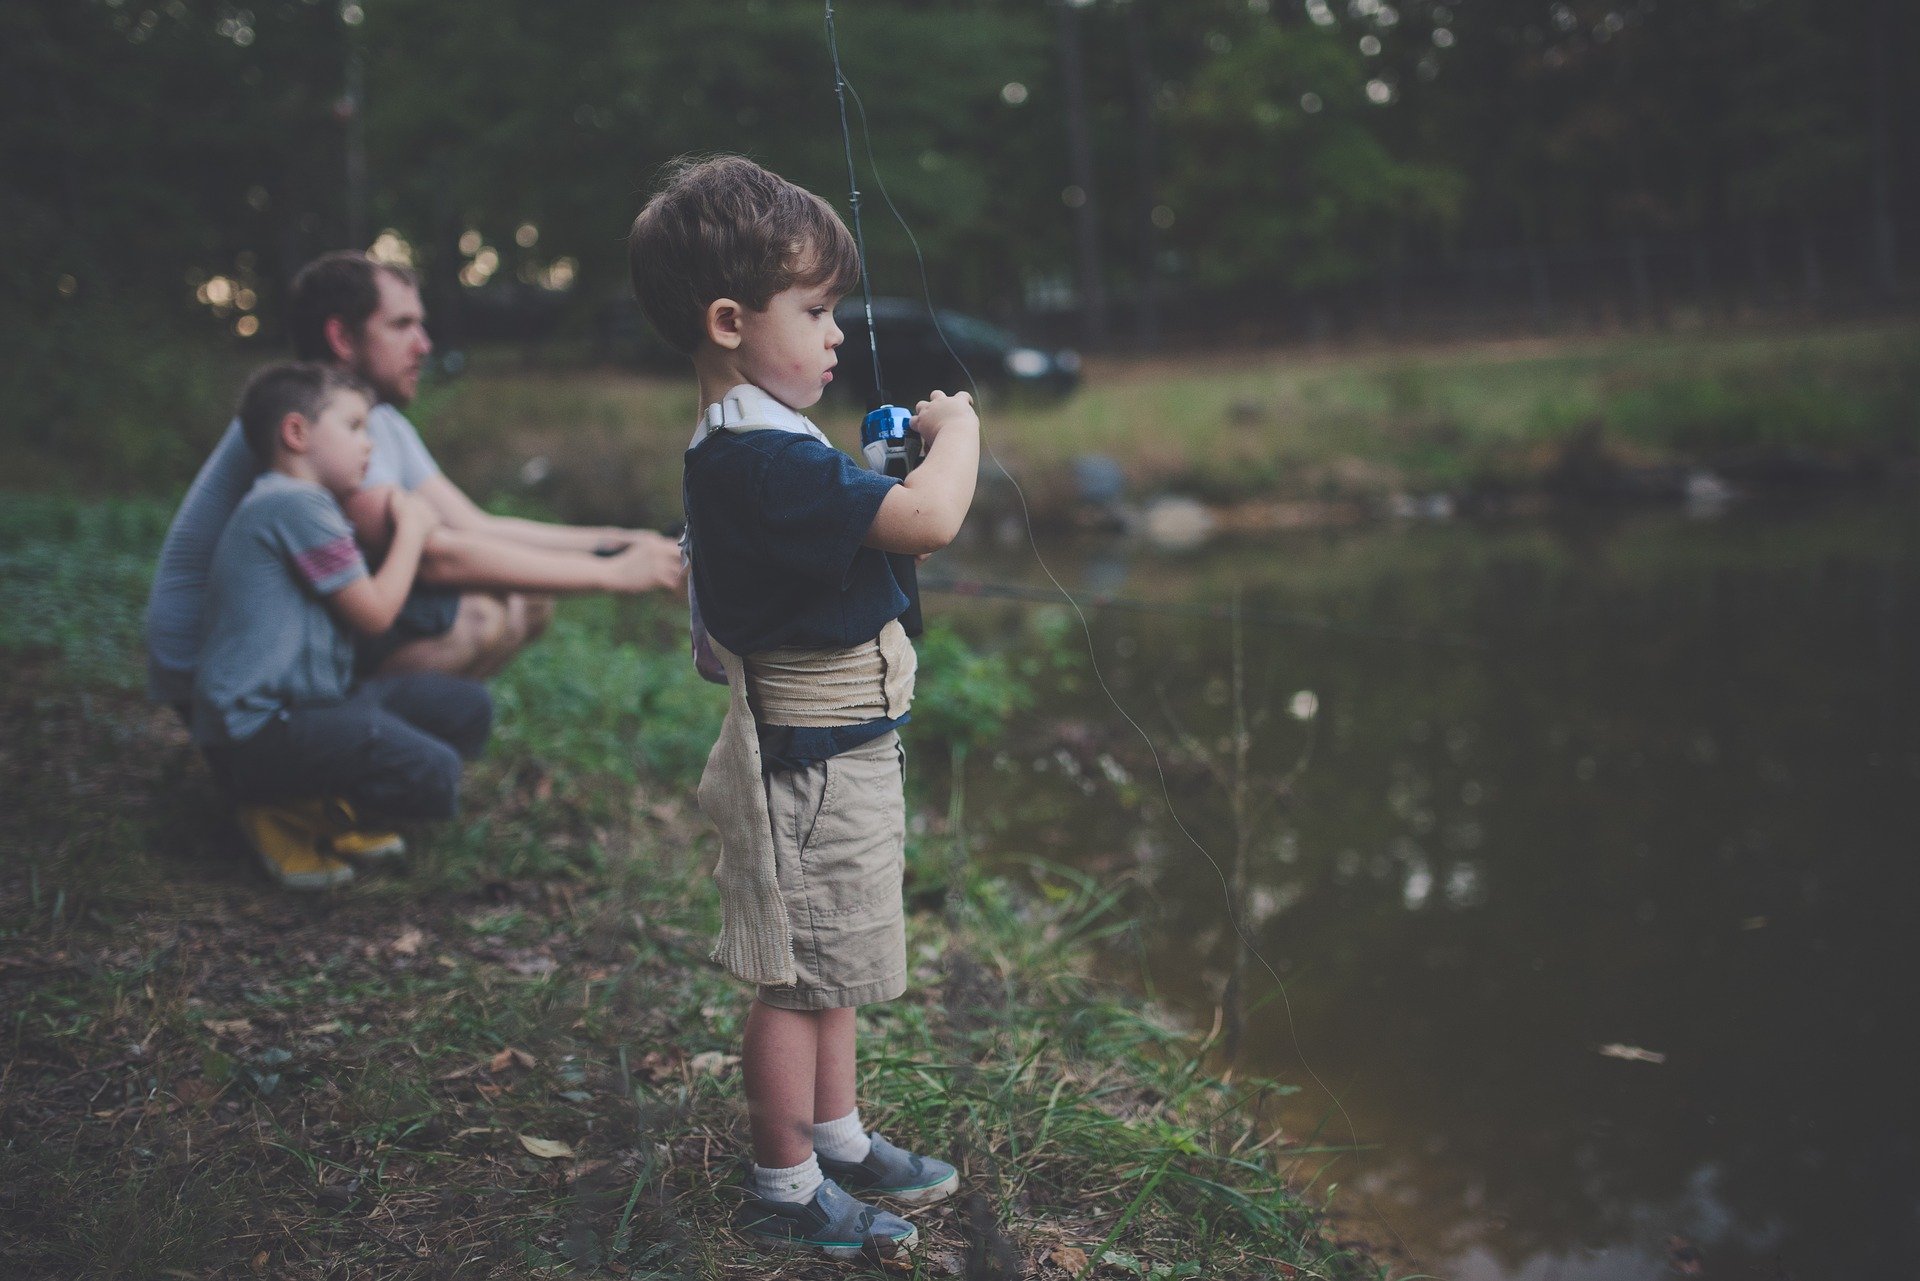 Menino pescando em lago, junto dos pais ao lado.